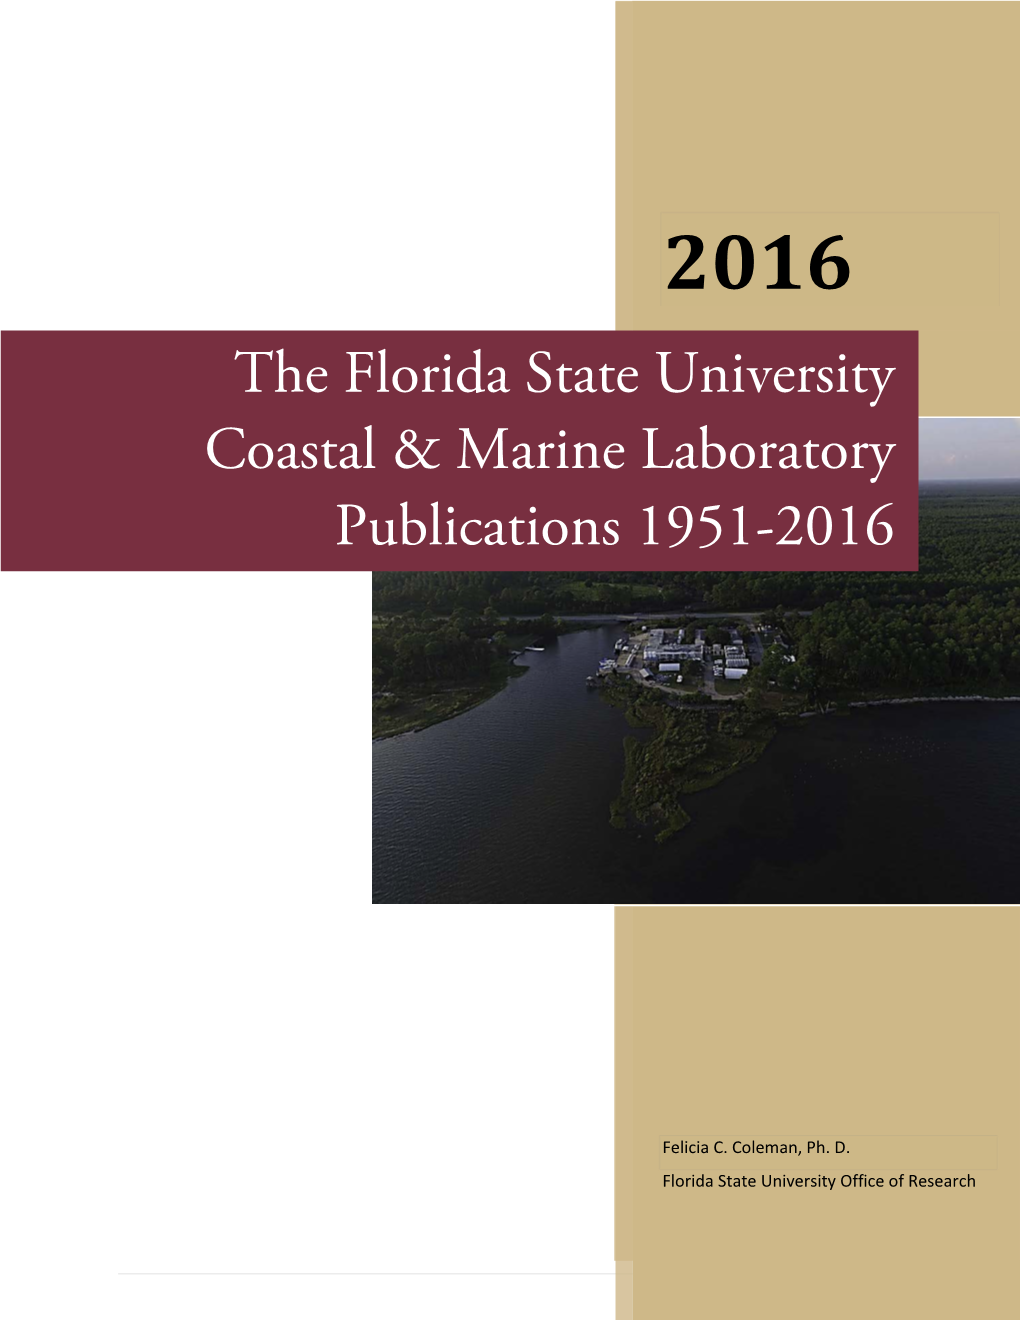 2016 the Florida State University Coastal & Marine Laboratory Publications 1951-2016